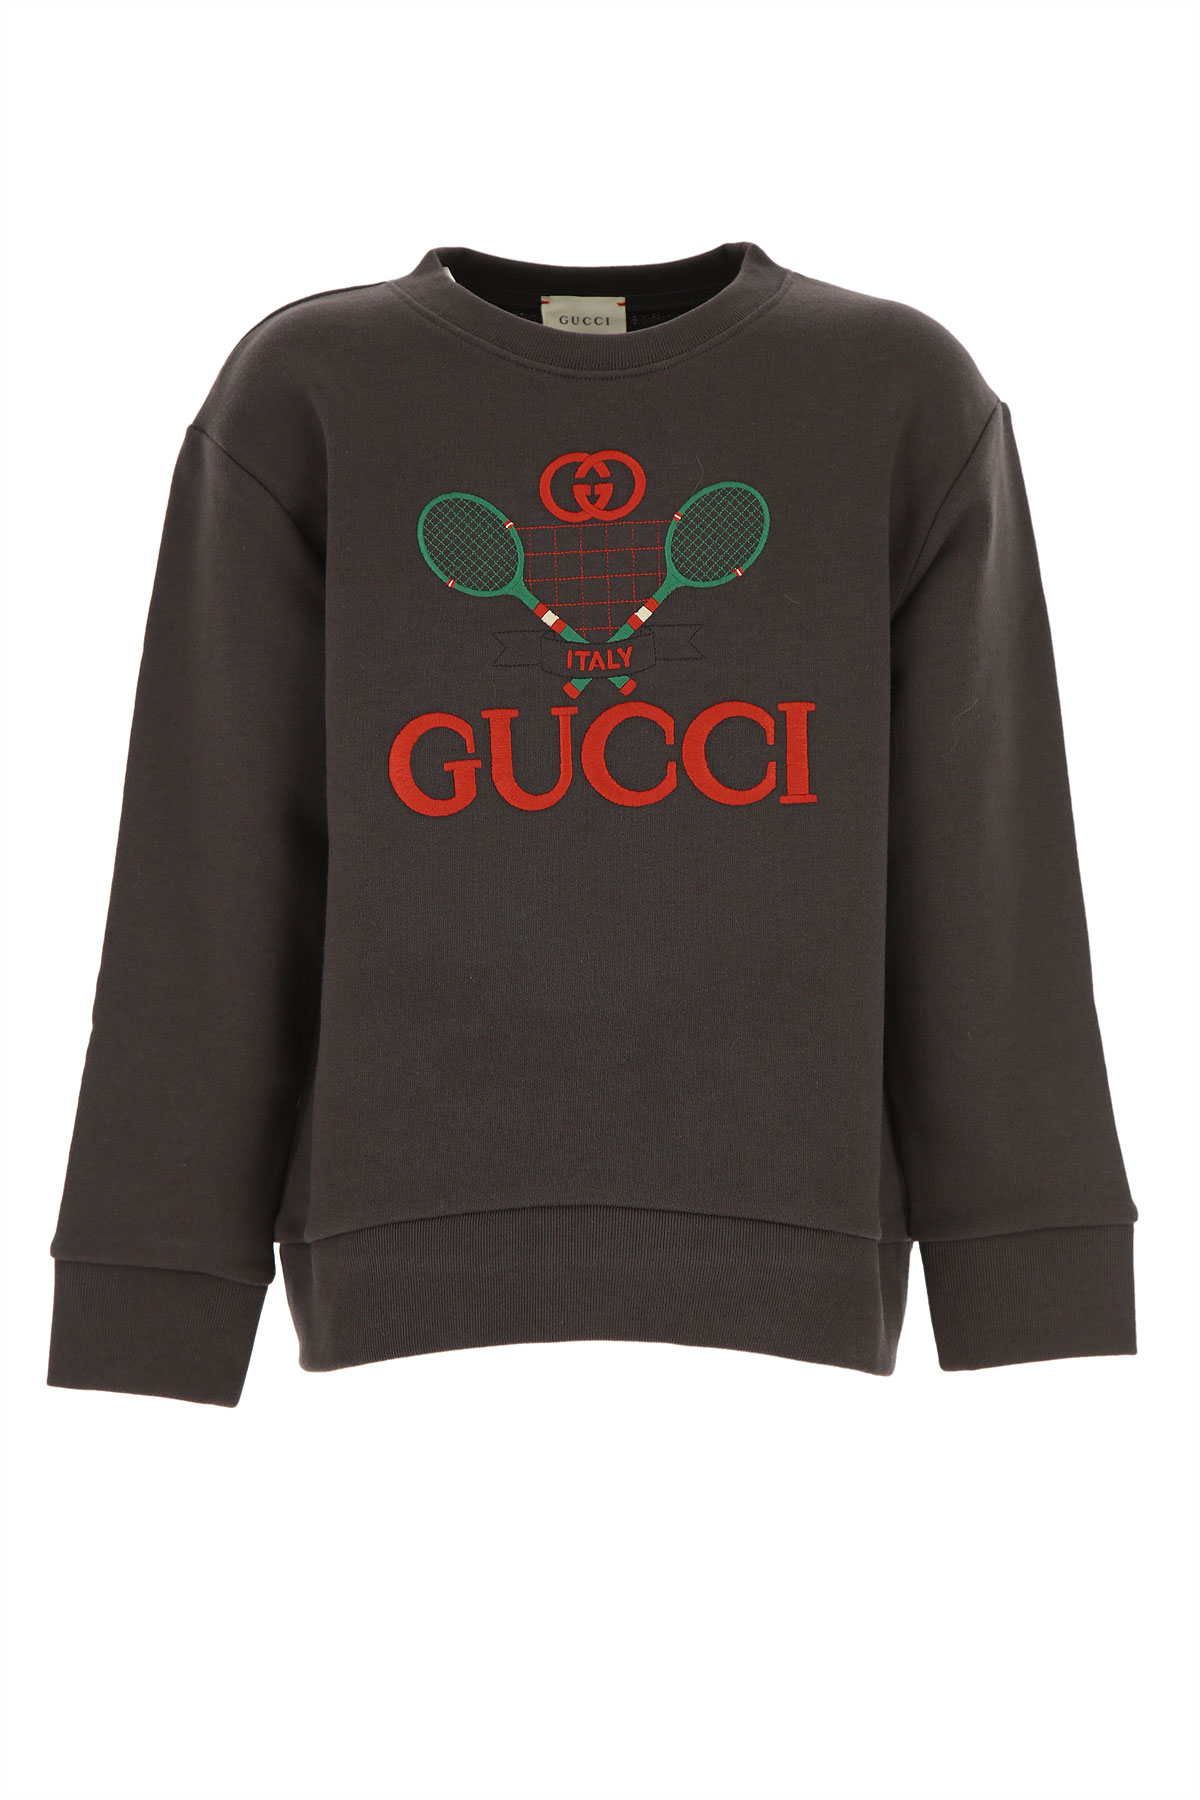 Gucci Kinder Sweatshirt & Kapuzenpullover für Jungen Günstig im Sale, Dunkles Antrazit Grau, Polyester, 2017, 10Y 4Y 6Y 8Y